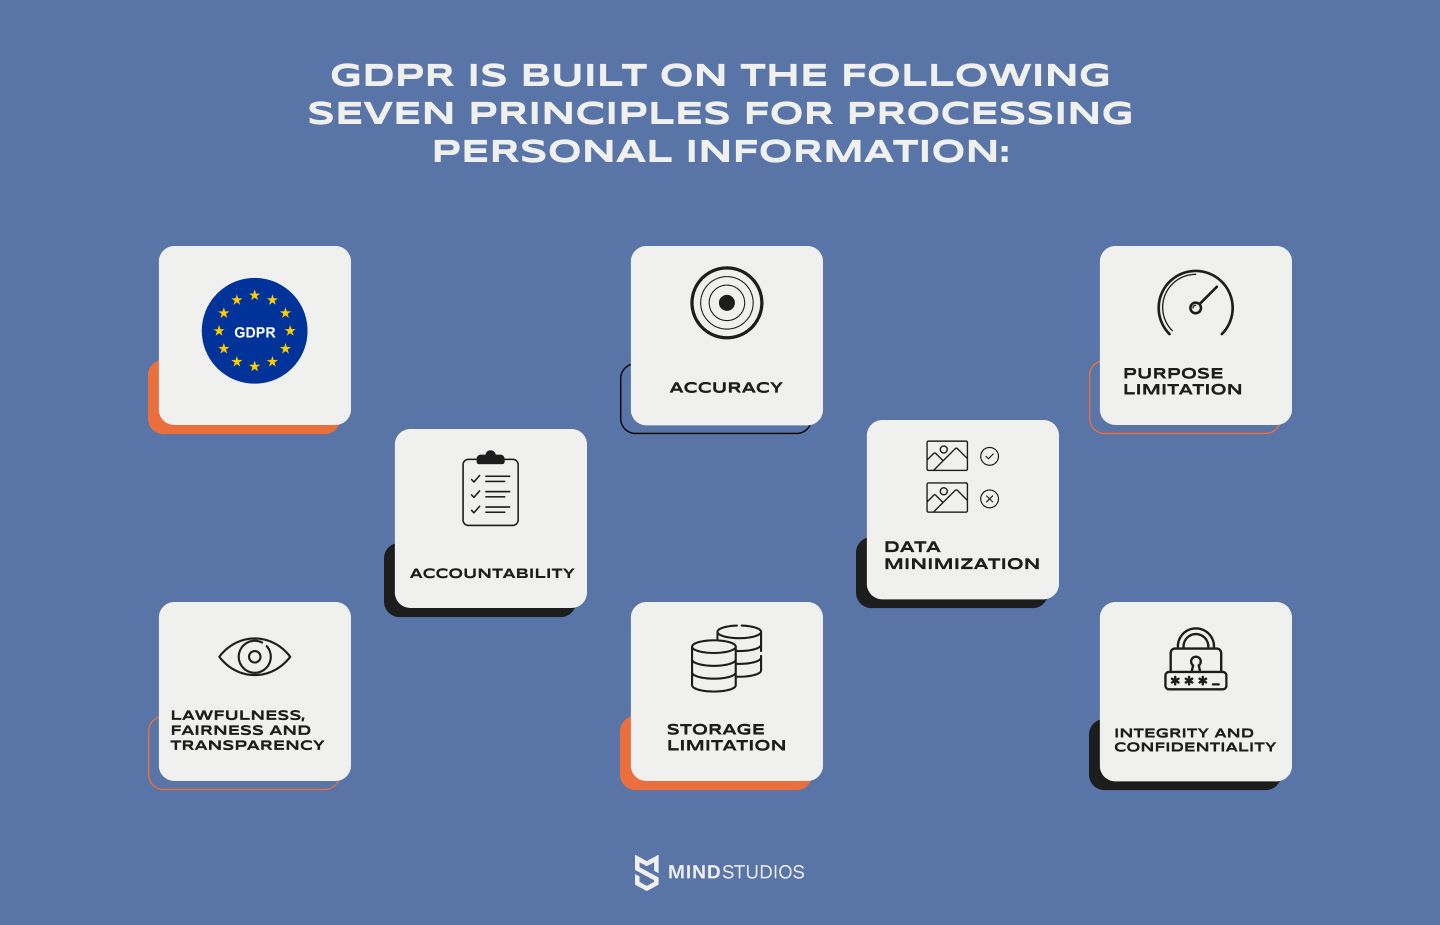 Il GDPR si basa sui seguenti sette principi per il trattamento delle informazioni personali